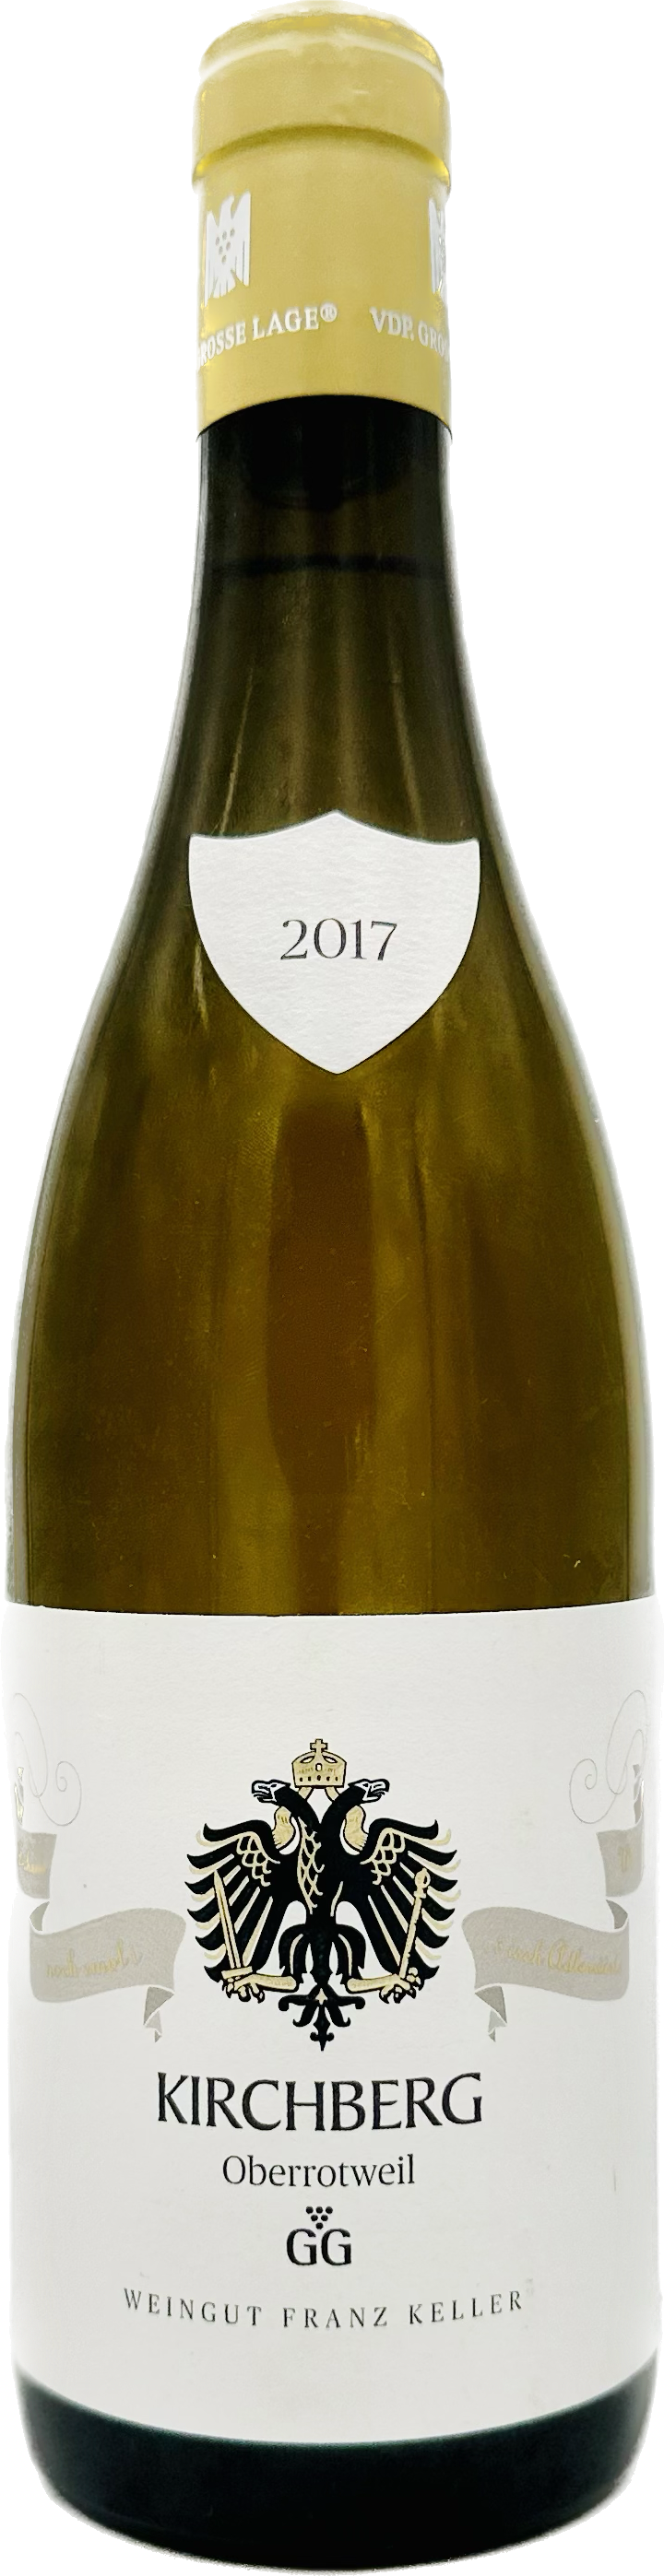 Franz Keller Chardonnay "Oberrotweiler Kirchberg" GG 2017